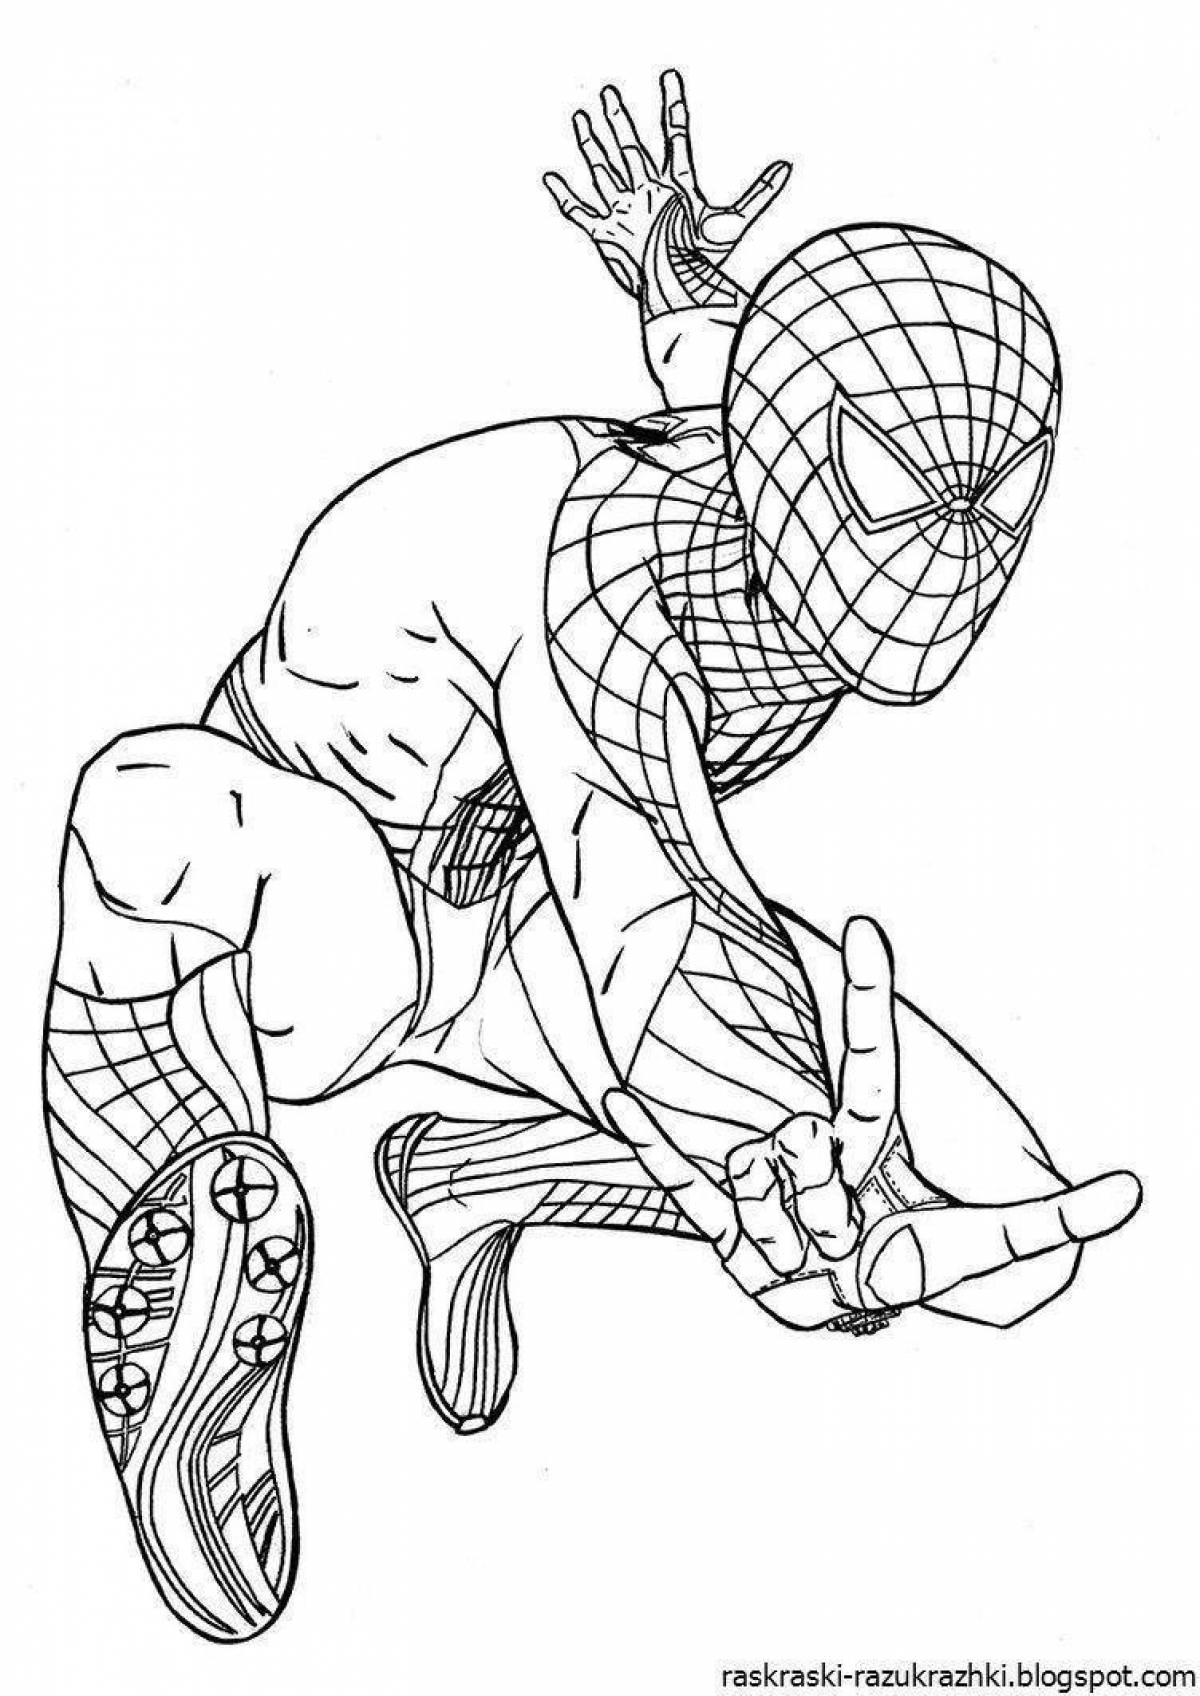 Ярко окрашенная страница раскраски человека-паука